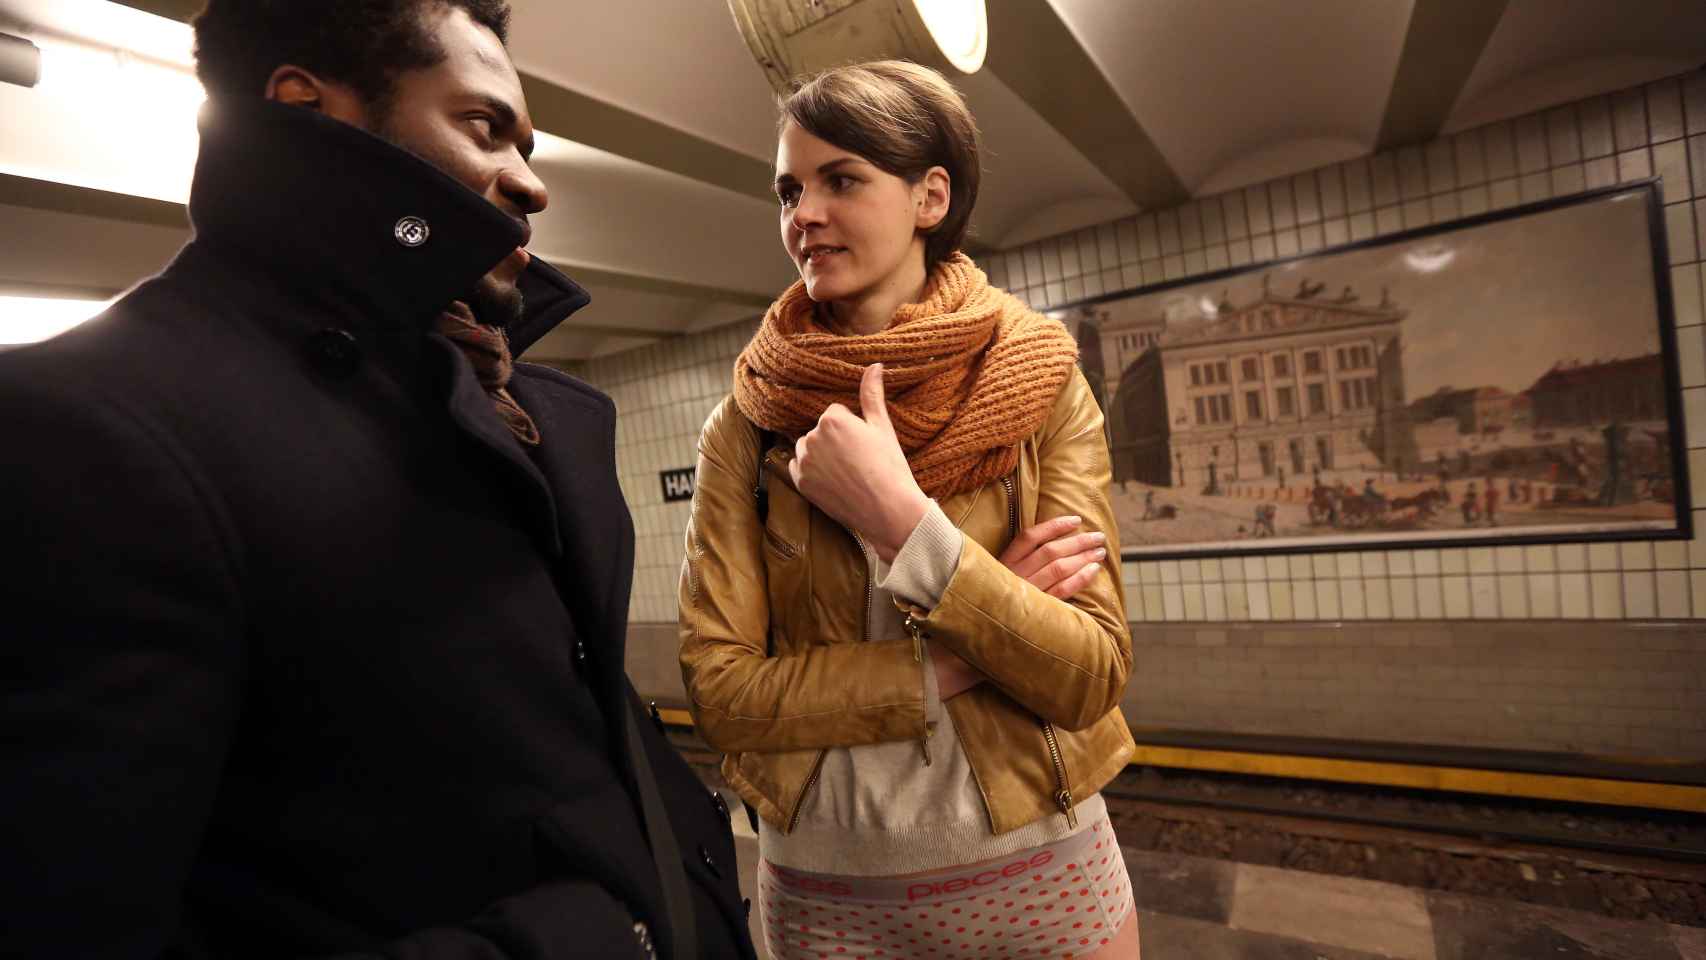 Un chico y una chica se miran en el metro de Berlín.